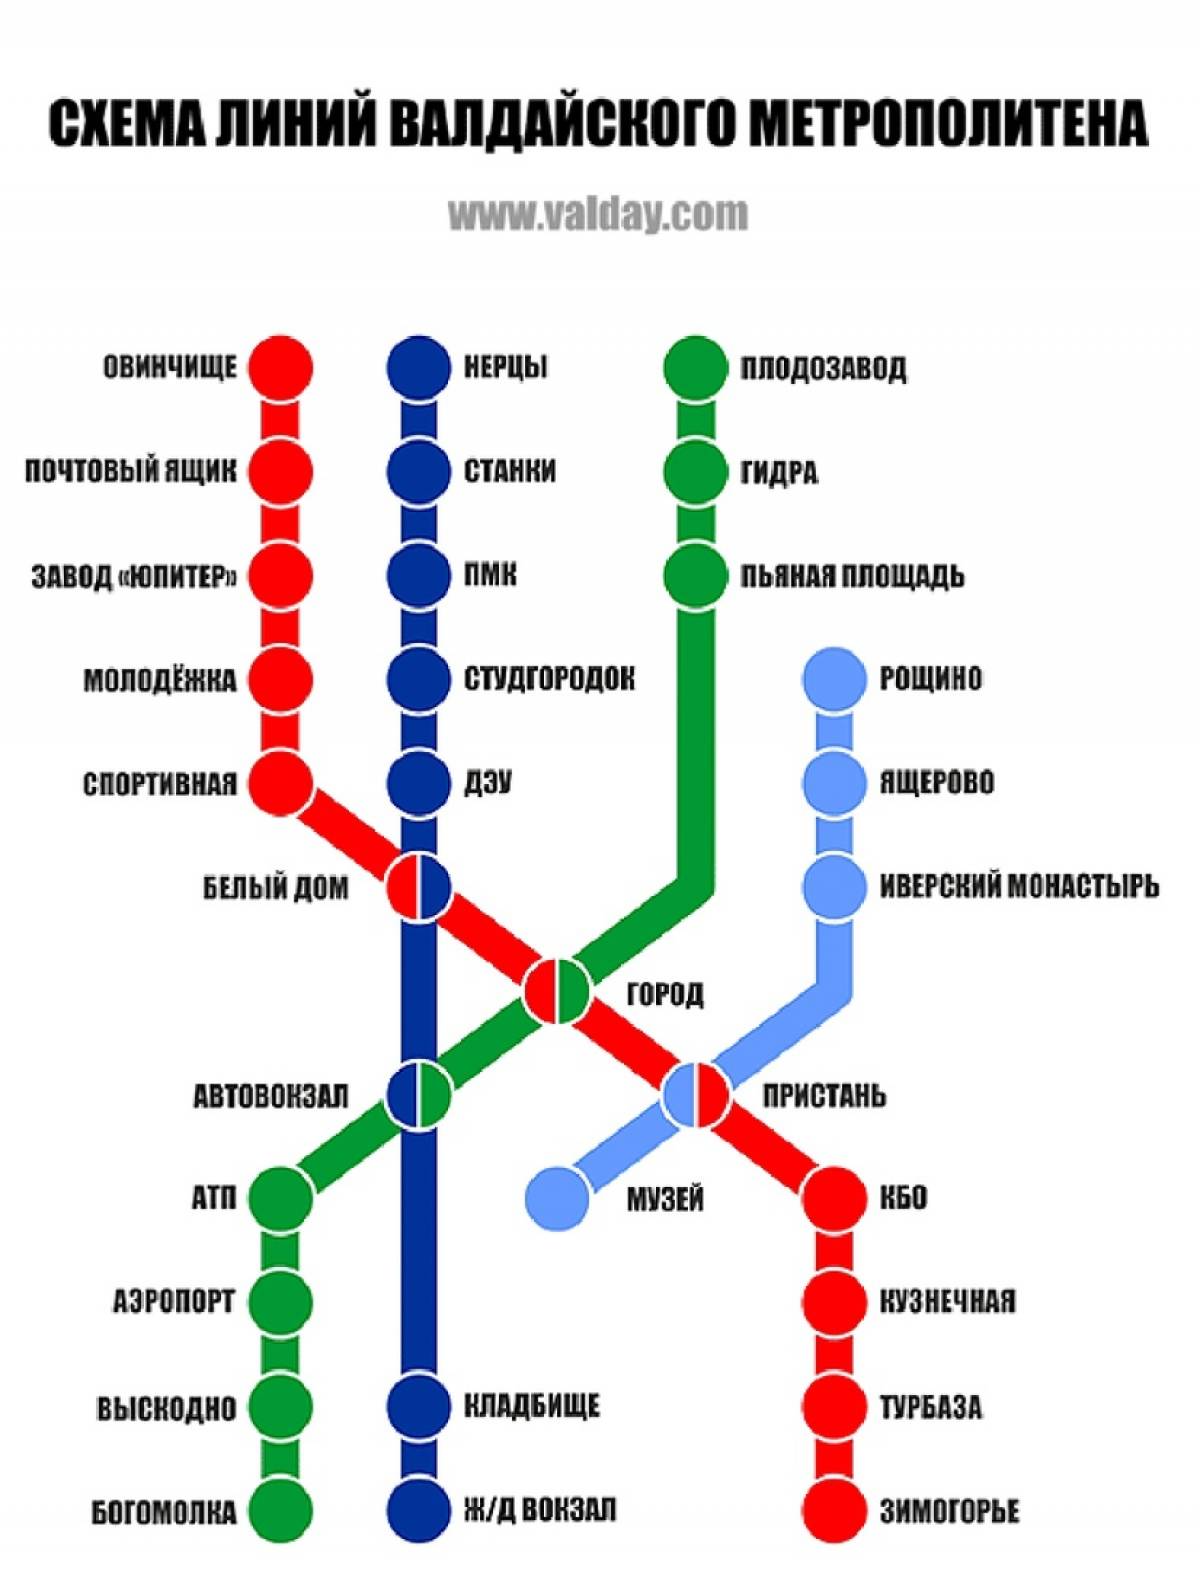 В некоторых районах города установлены указатели определенных станций метро.